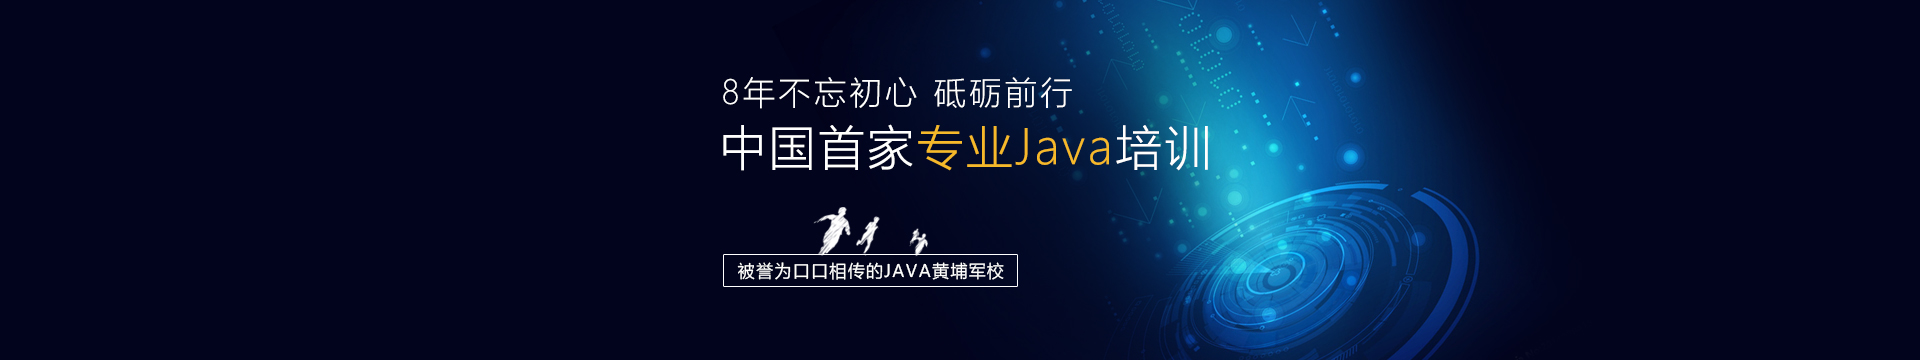 java培训机构排行榜_重磅!2021年国内Java培训机构排名前十最新出炉啦